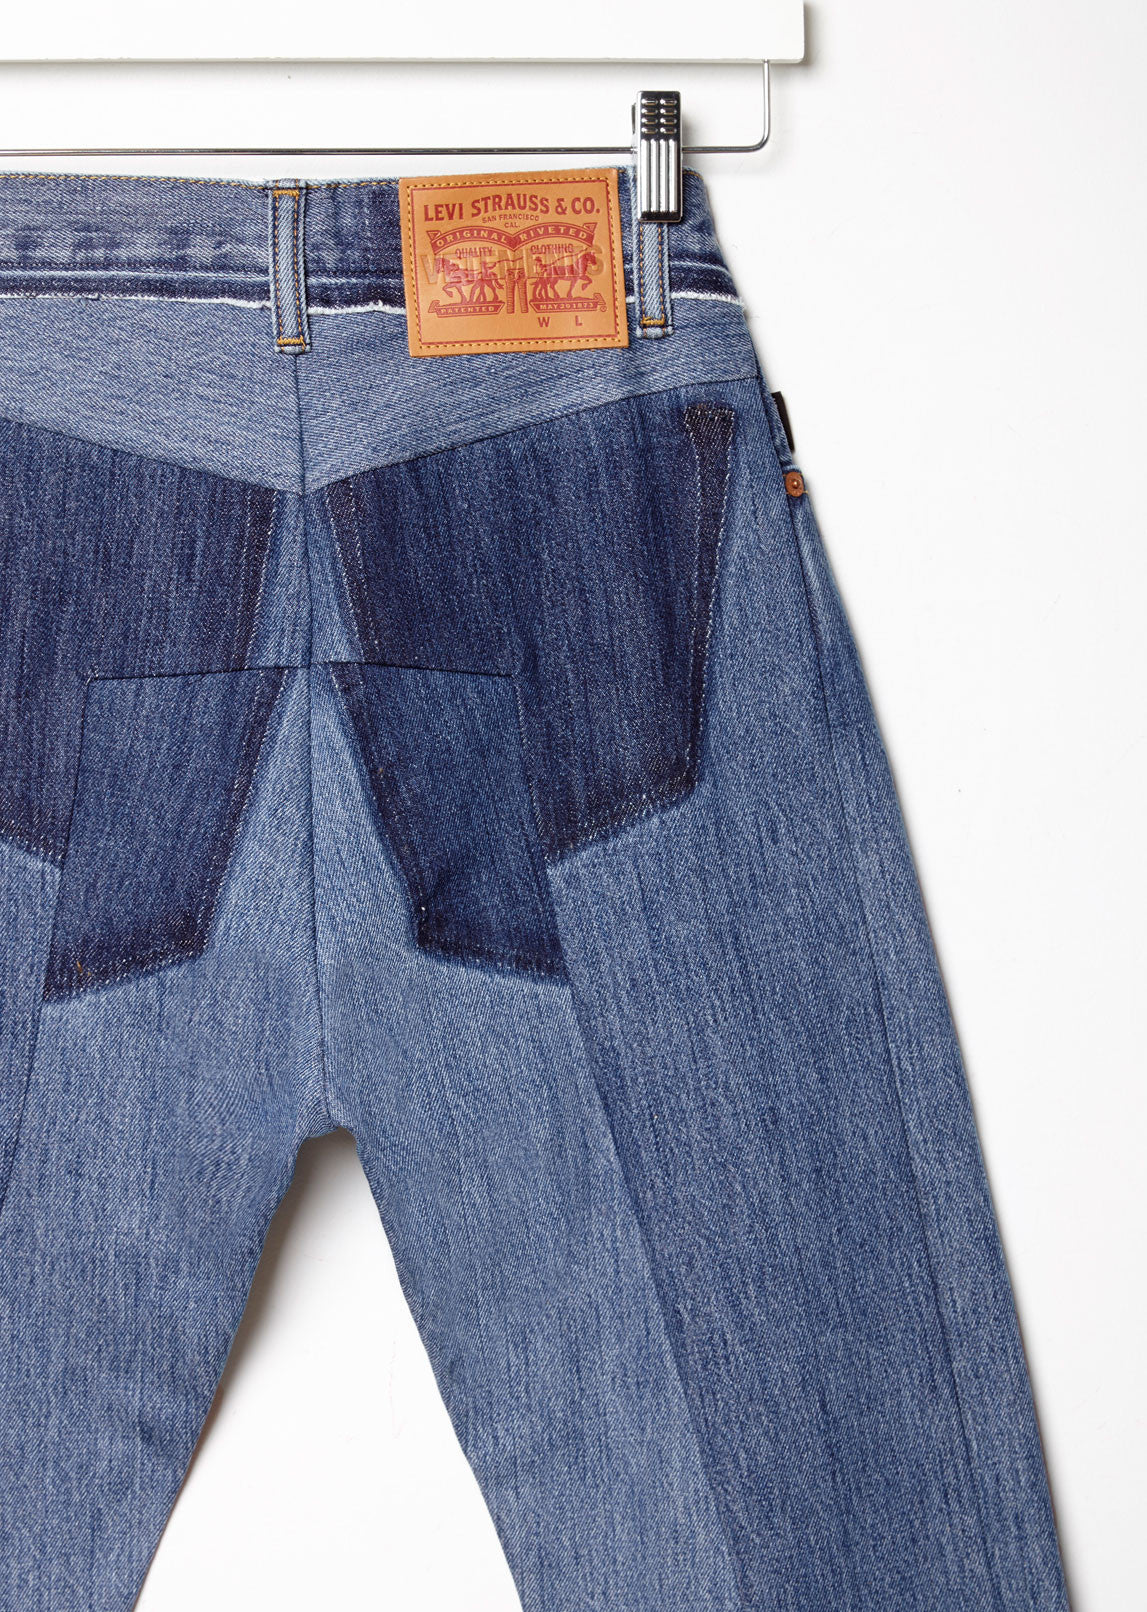 X Levi's Classic Reworked Jeans by Vetements - La Garçonne